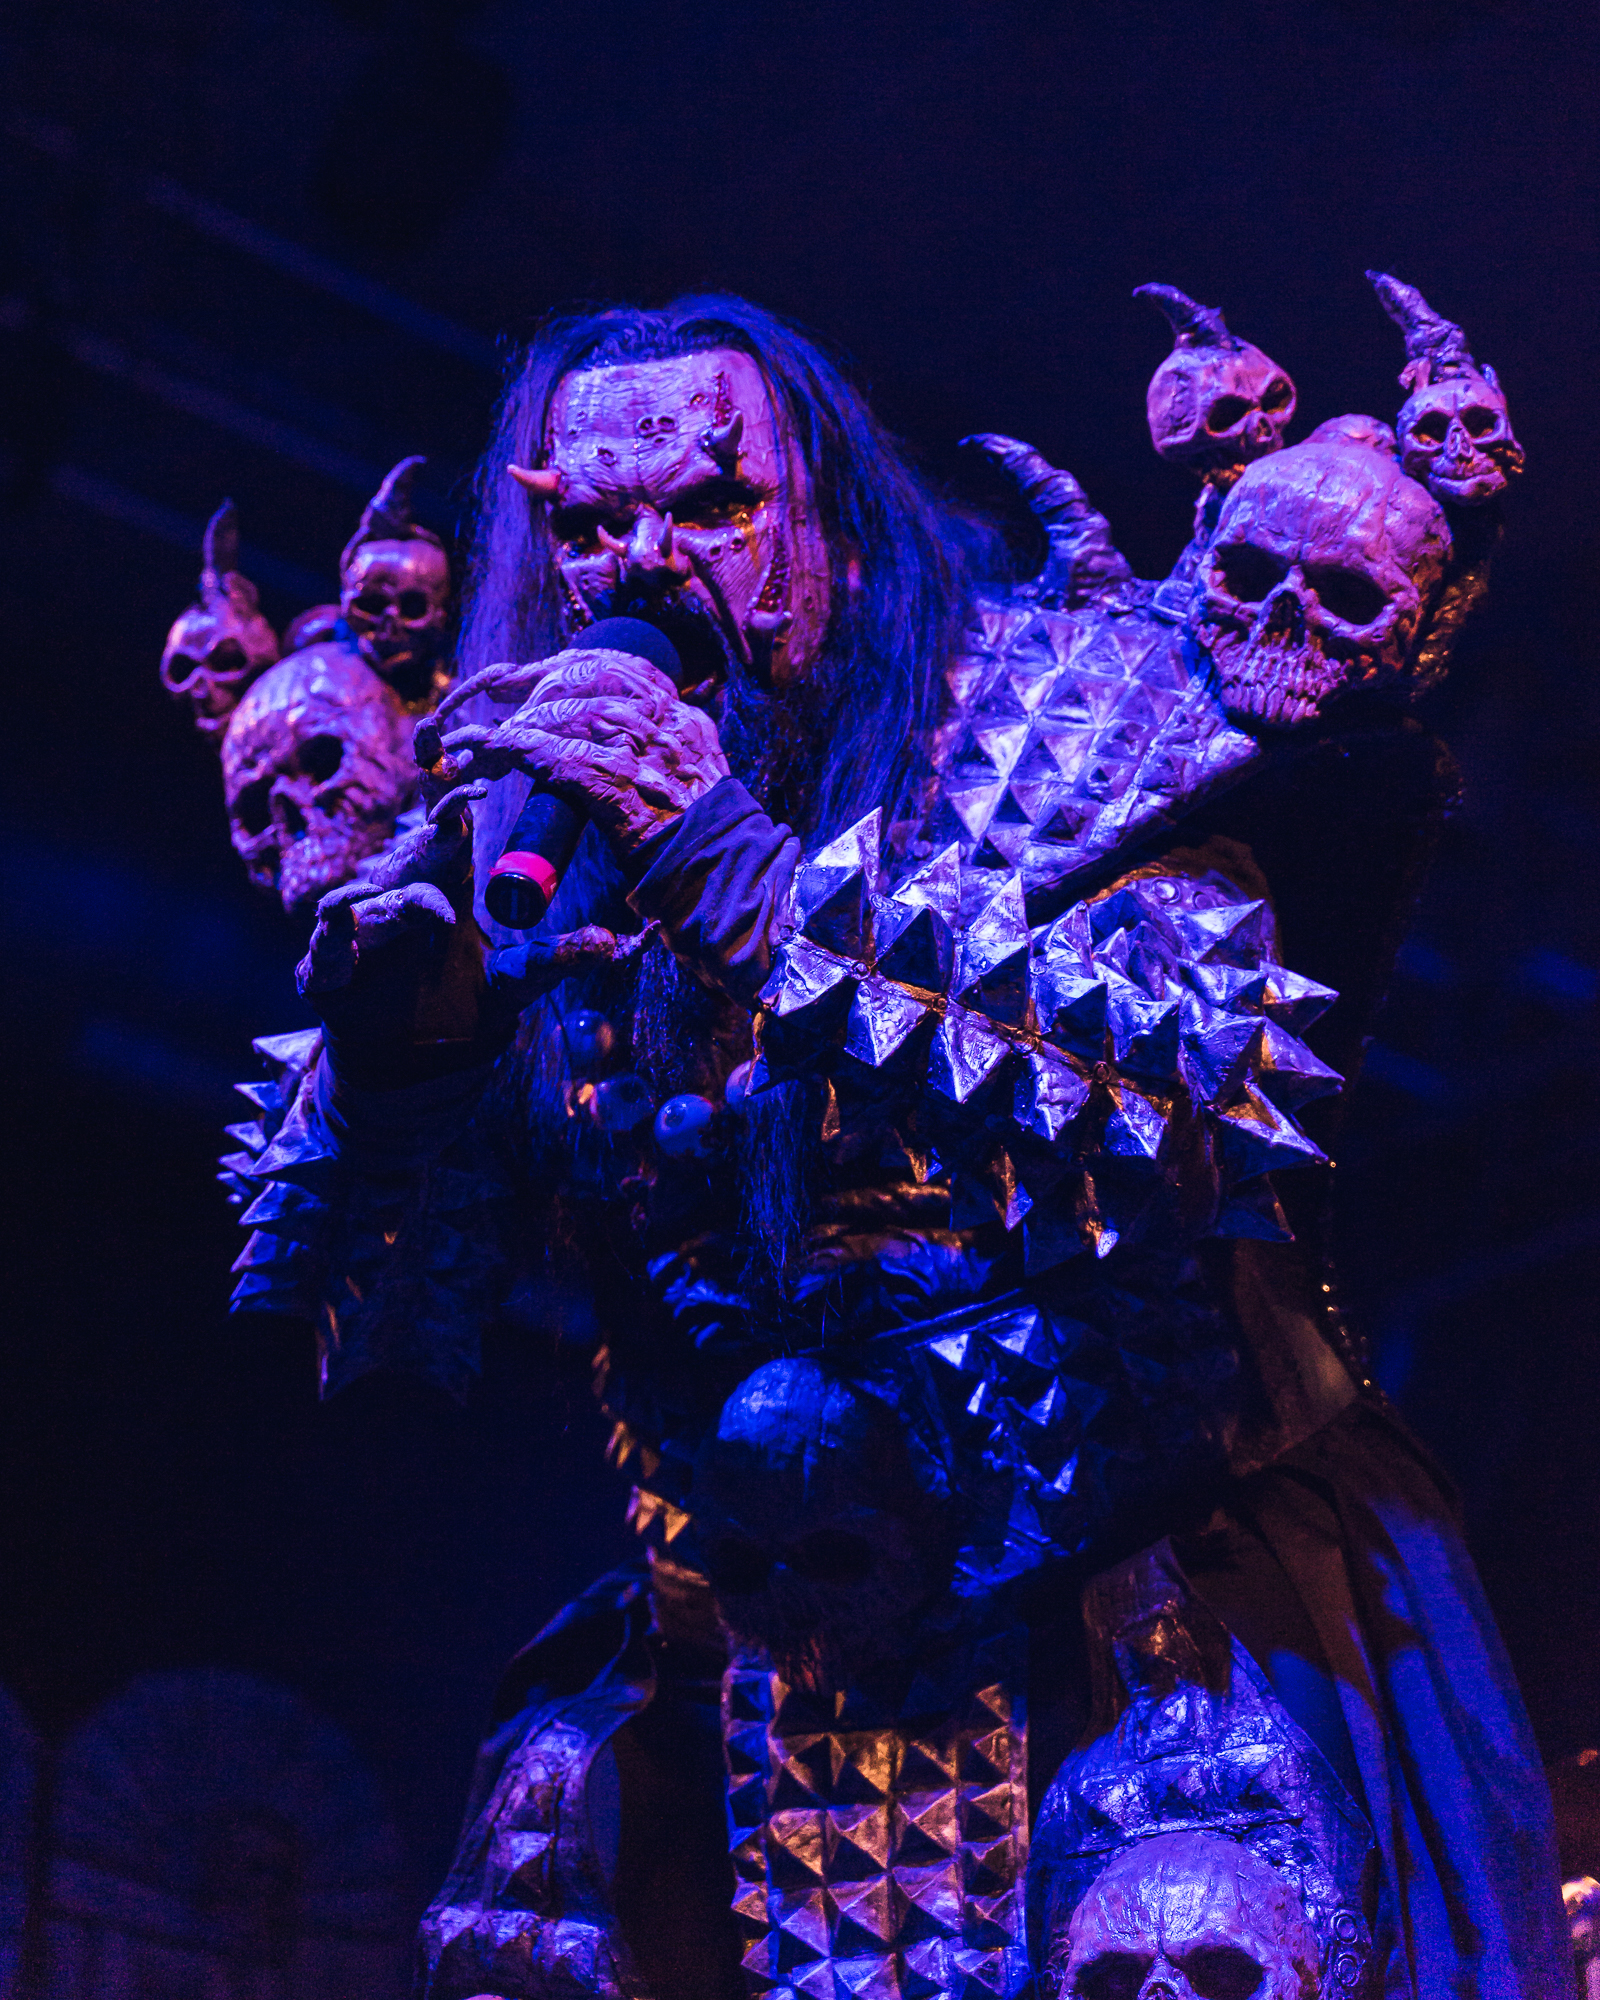 Lordi performing at Sala Santana 27 in Bilbao, Spain.